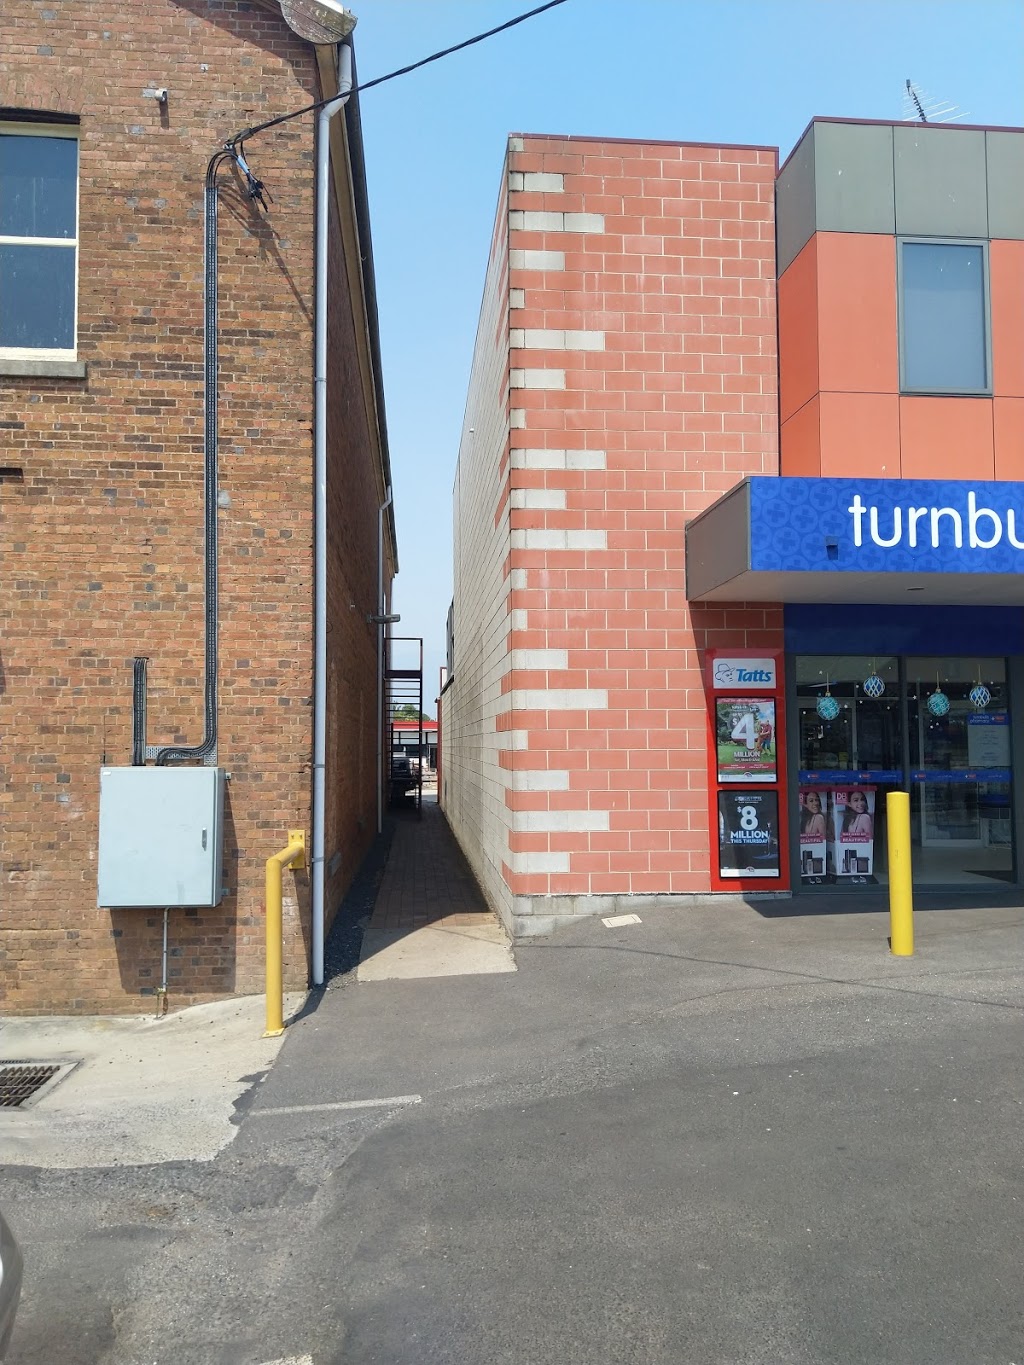 Turnbulls Pharmacy | 57 Main St, Sheffield TAS 7306, Australia | Phone: (03) 6491 1155